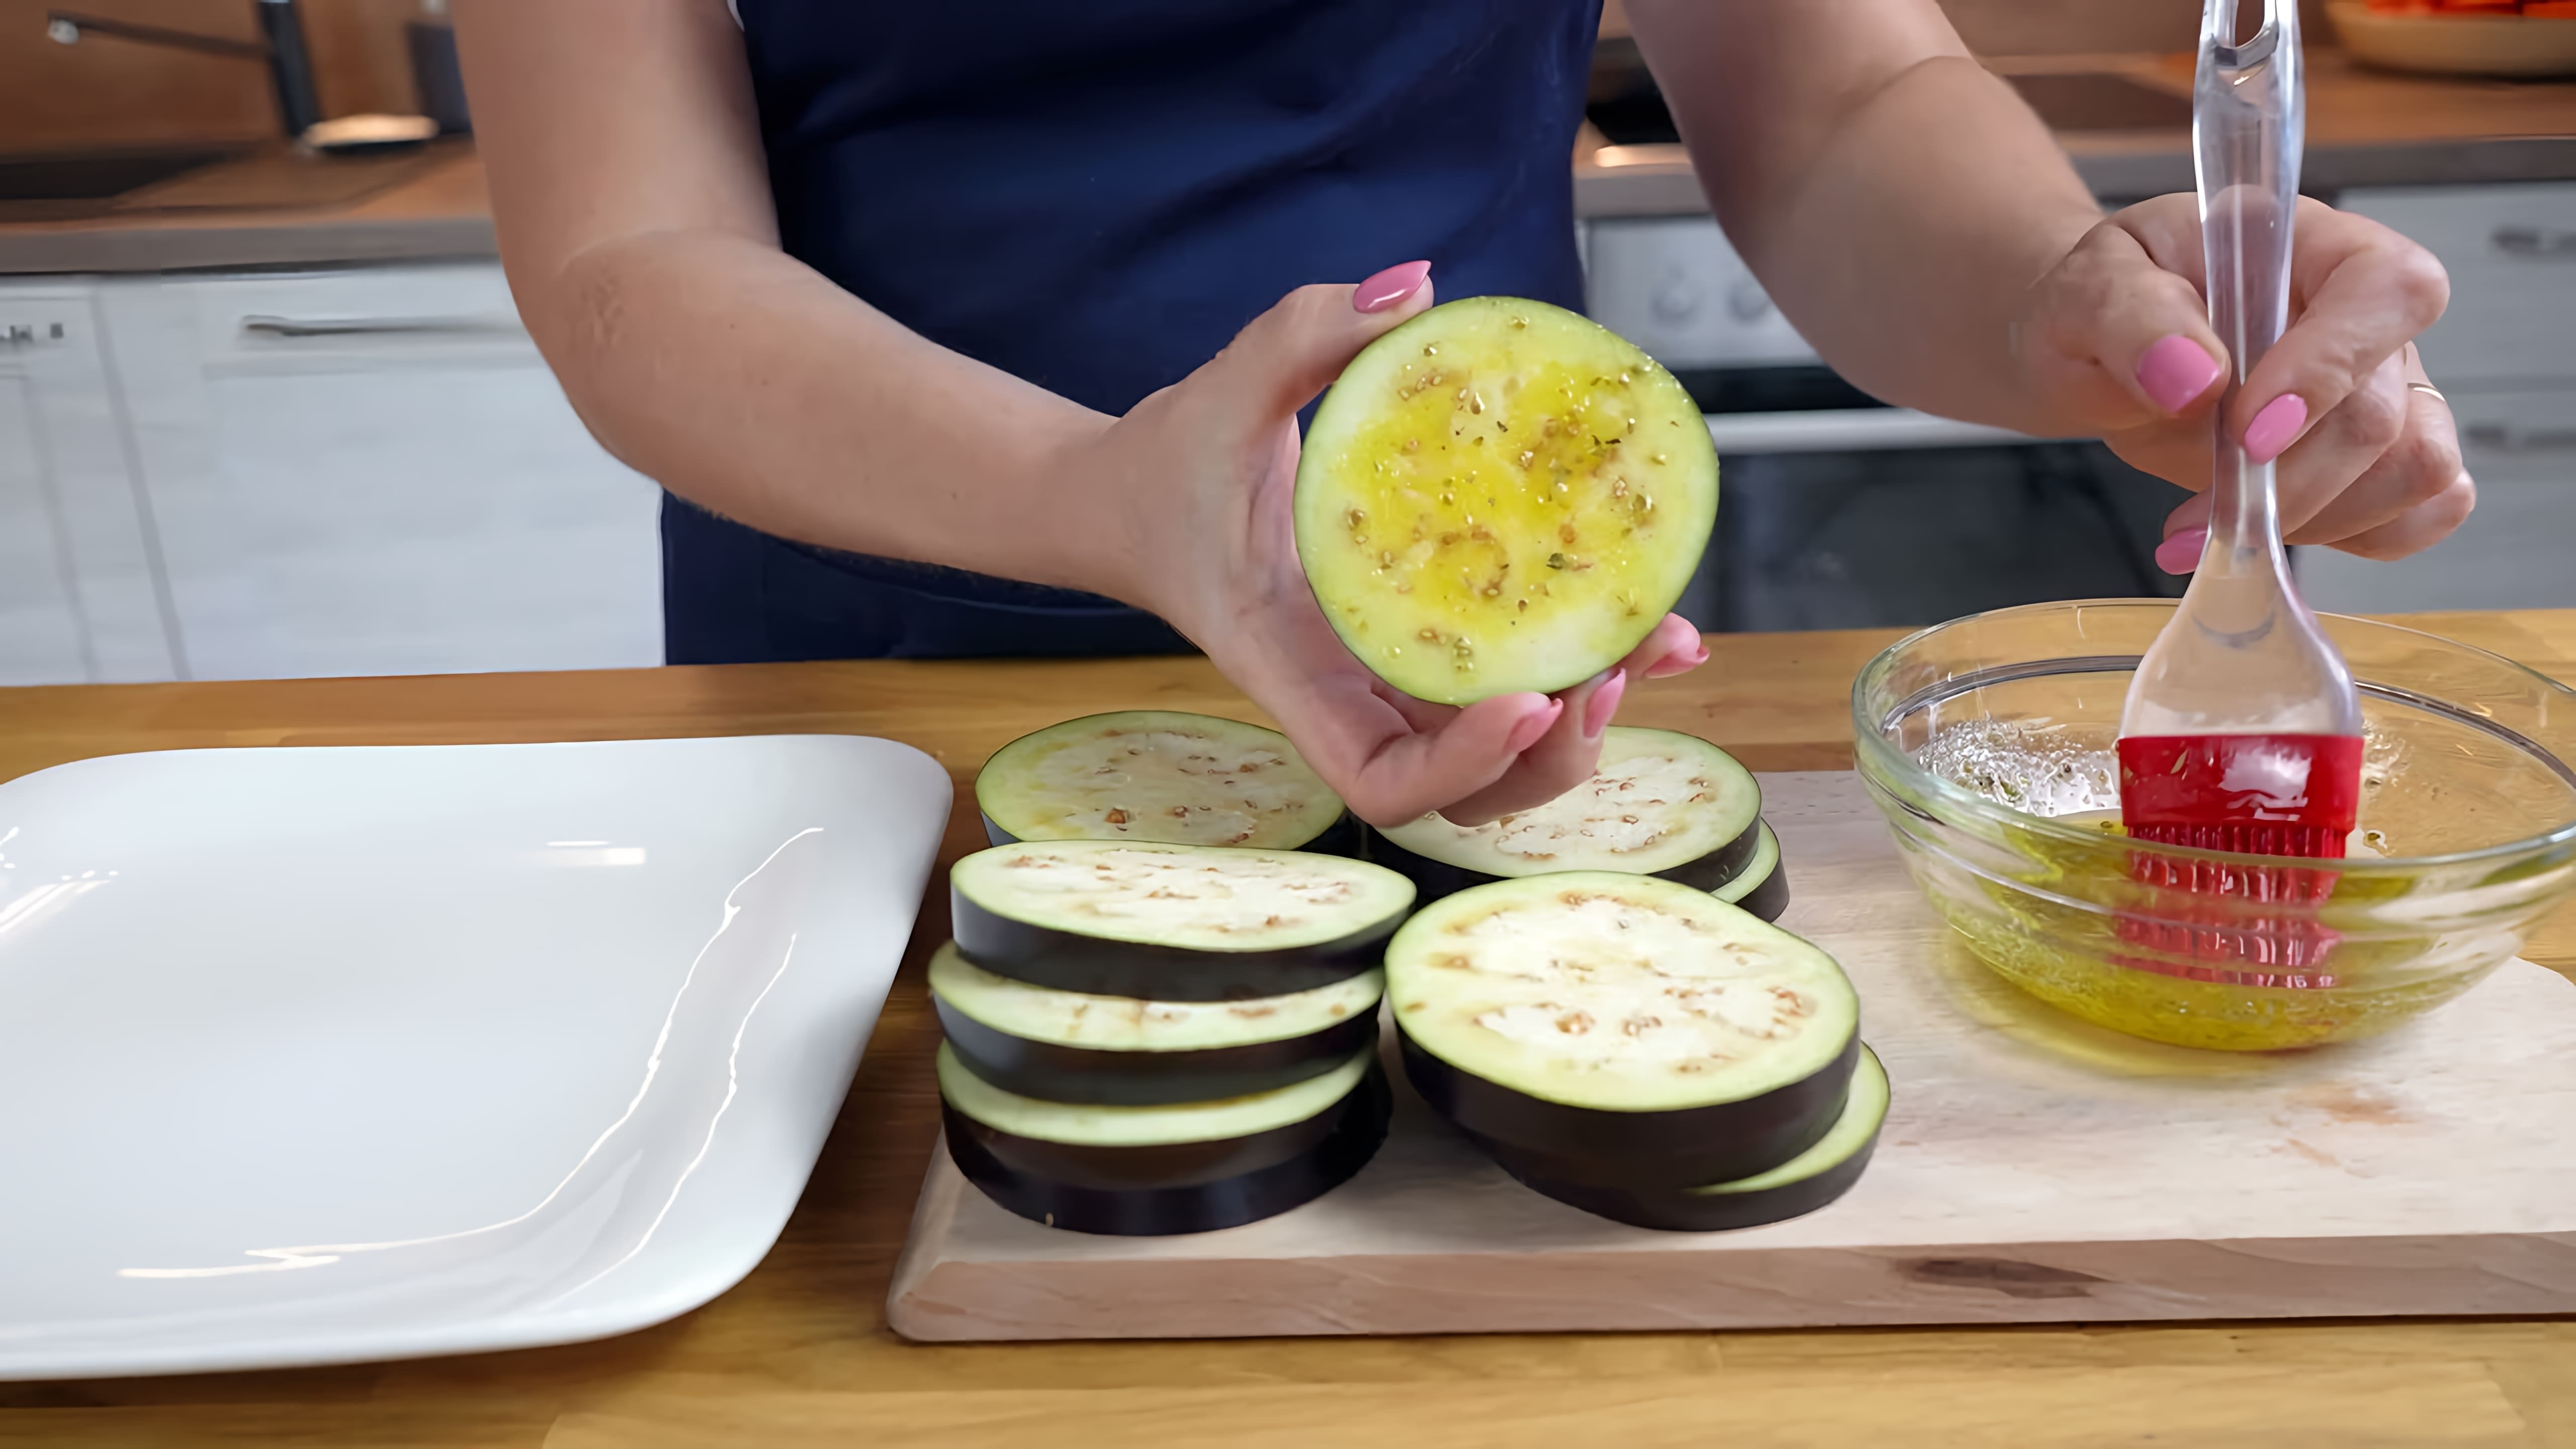 В этом видео демонстрируется рецепт приготовления закуски из баклажанов на праздничный стол